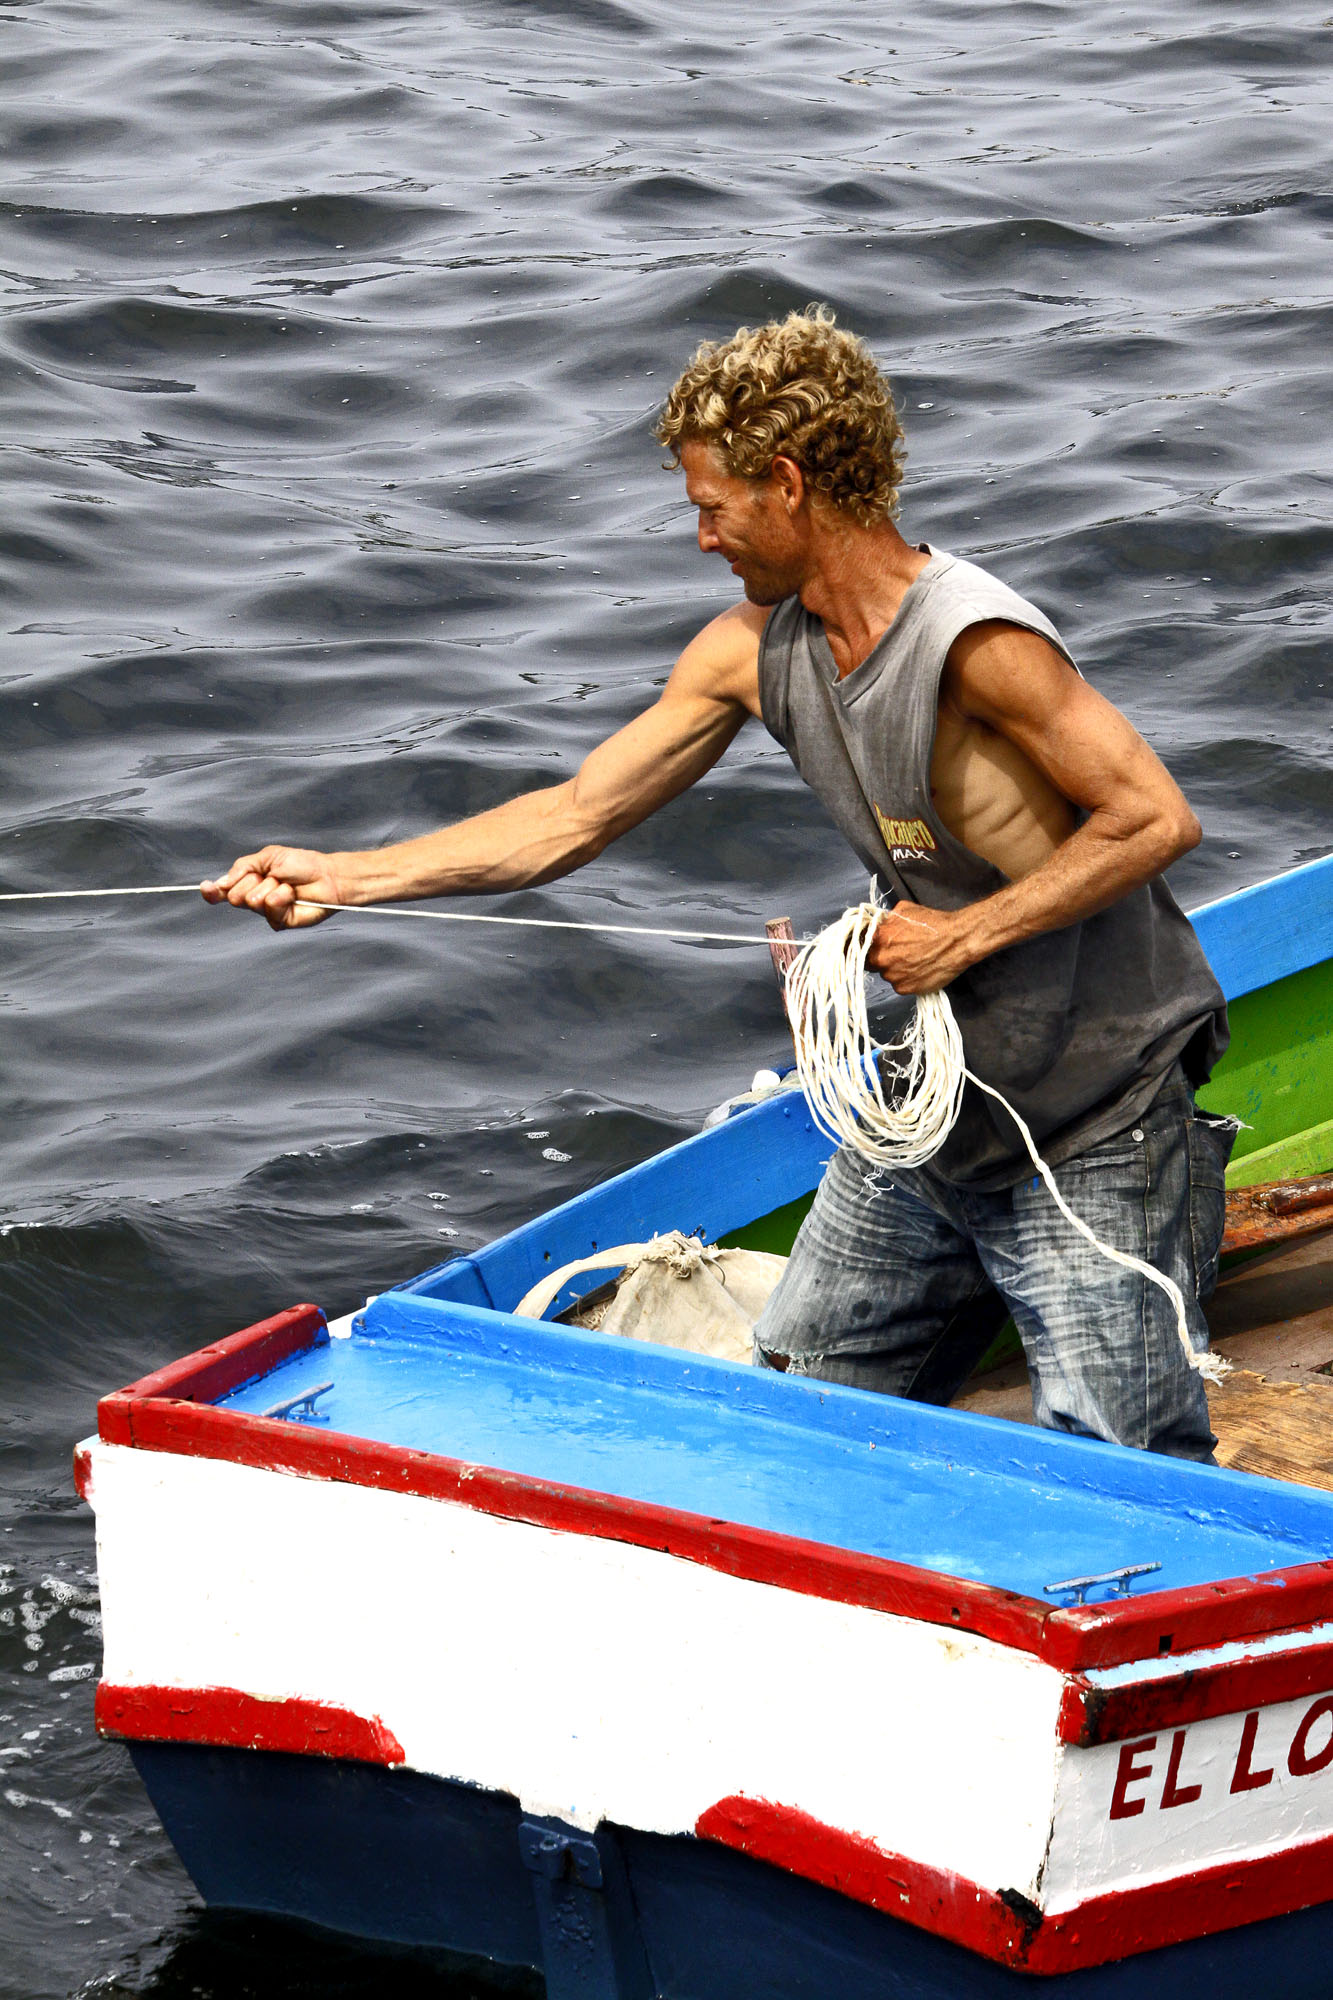 Hugh_Perry_Cuba fishing boat.jpg